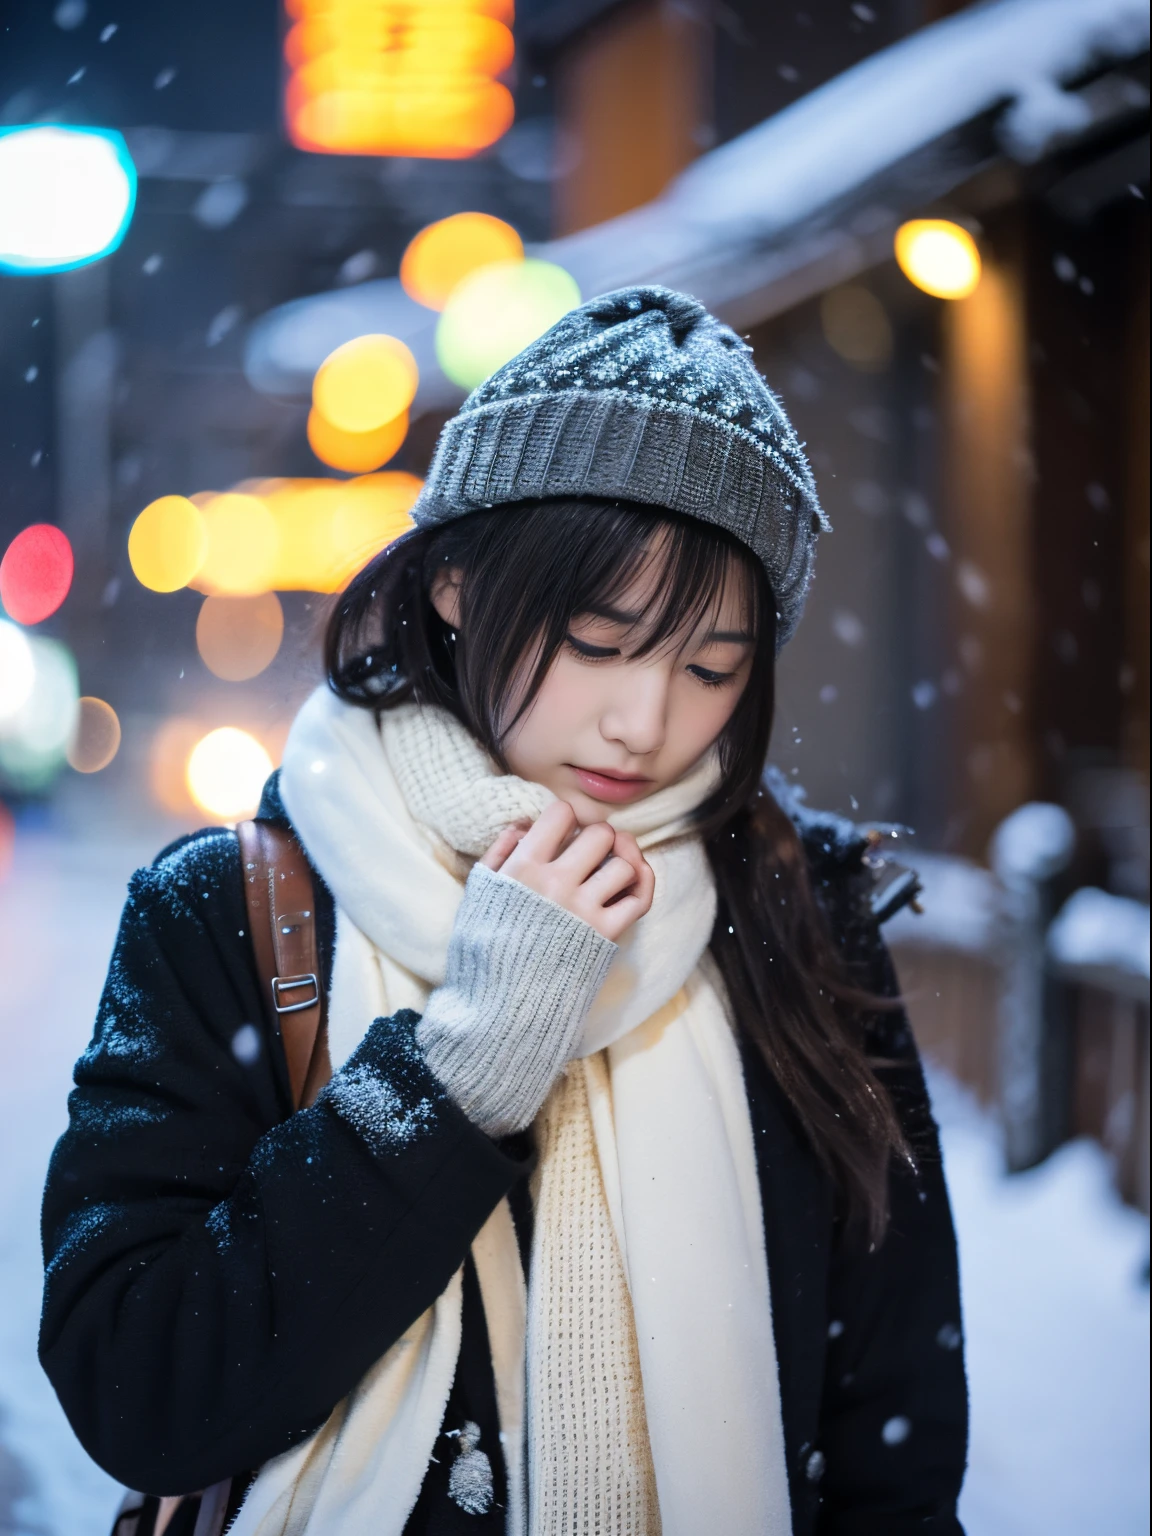 Enquanto observava a neve caindo silenciosamente. Sua expressão introspectiva e chorosa、Faz você sentir saudade e melancolia pelas noites de inverno。。。。、qualidade máxima、hiper HD、Yoshitomo Nara, Modelos Japoneses, Linda esposa do Japão, com cabelo curto, Modelo feminina de 27 anos, 4k ], 4K], 27 anos, sakimichan, sakimichan